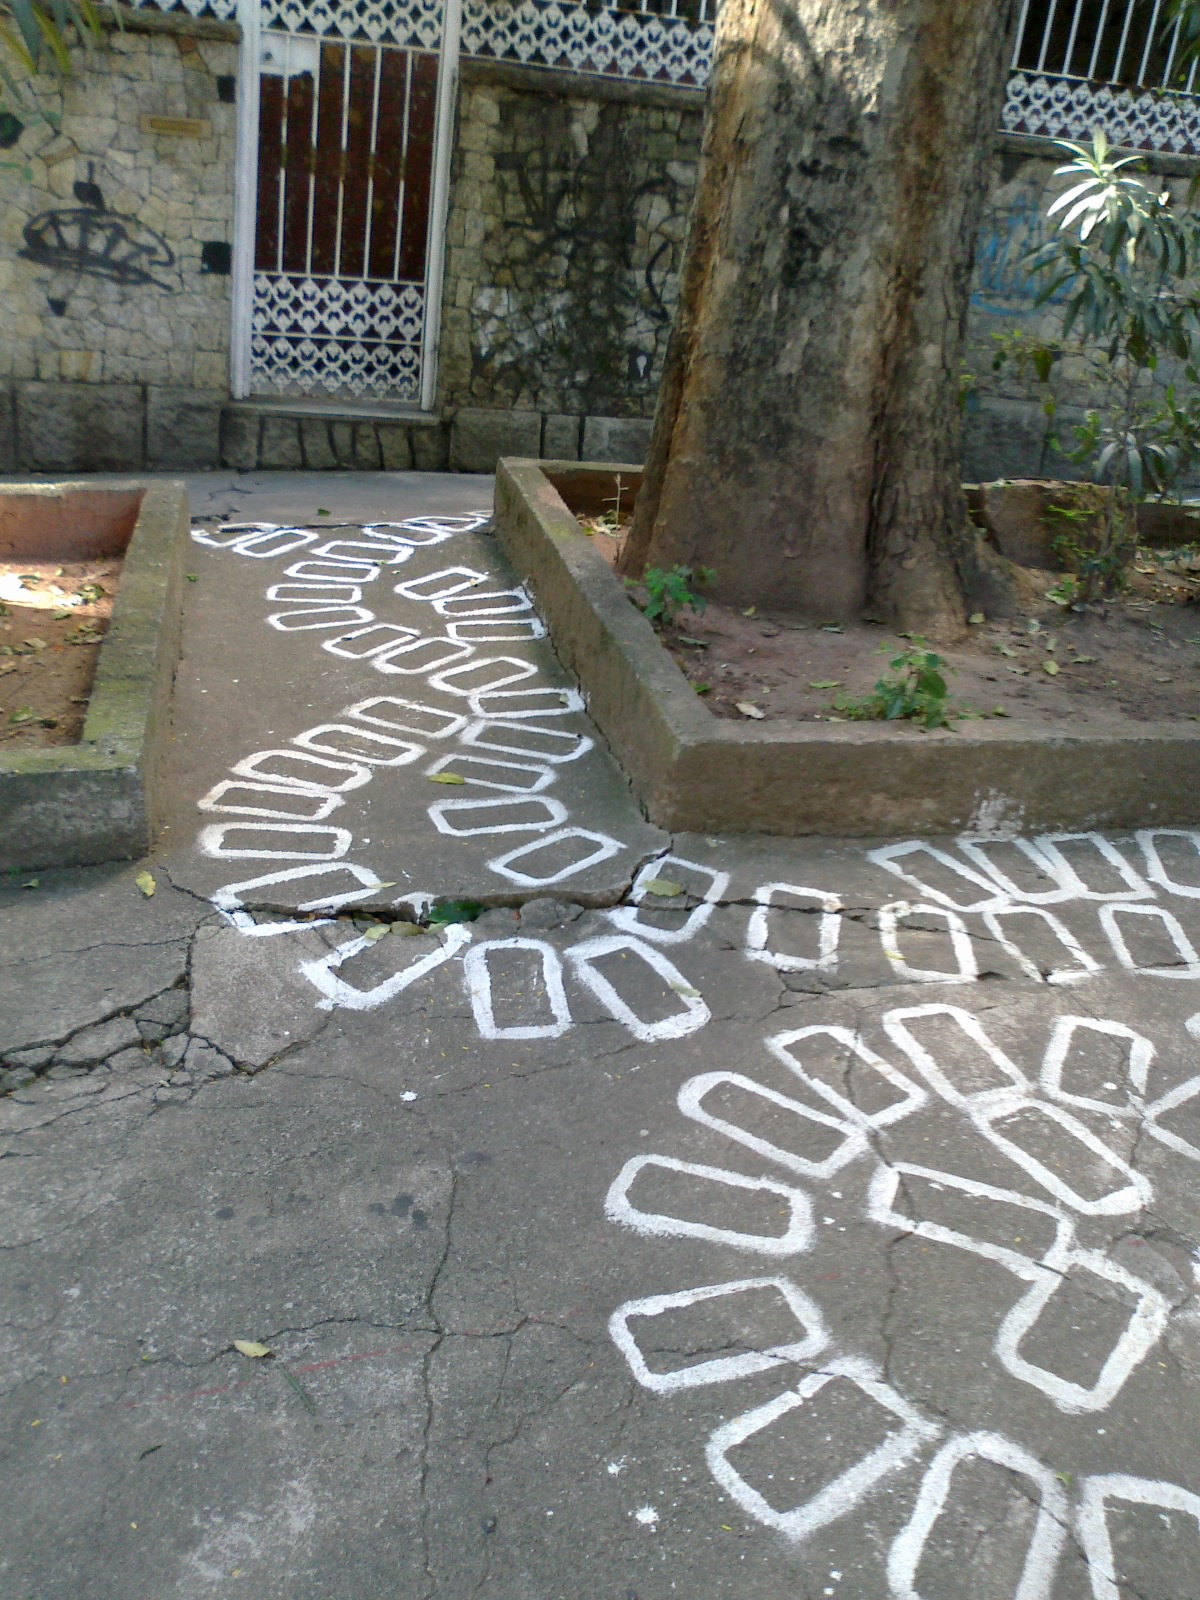  Figura 3 – Calçada com intervenção artística de Fabiano do Nascimento Costa. Fotografia da autora.